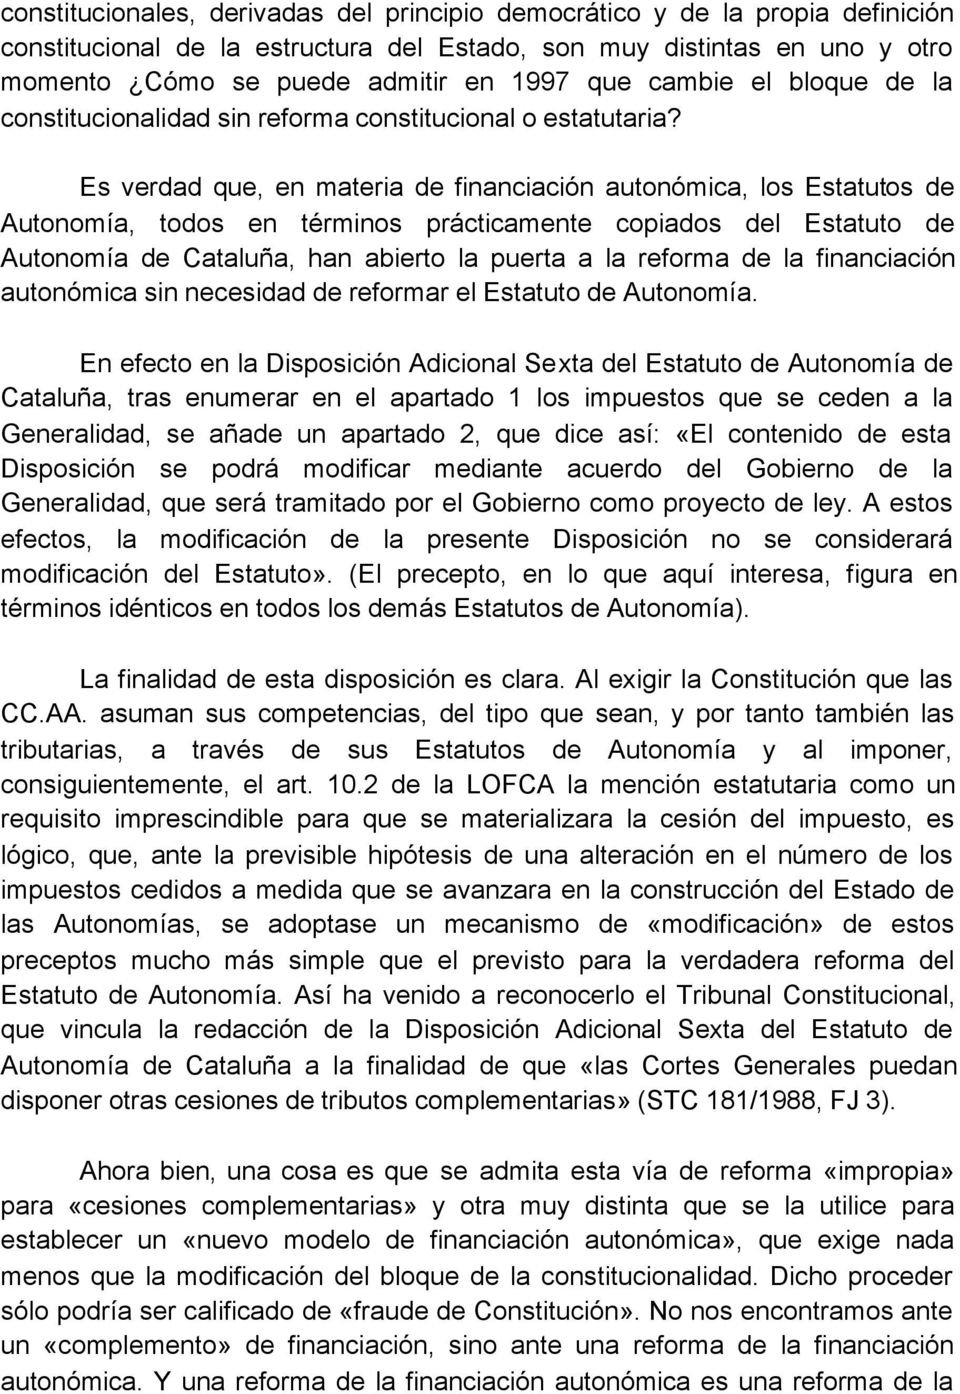 Es verdad que, en materia de financiación autonómica, los Estatutos de Autonomía, todos en términos prácticamente copiados del Estatuto de Autonomía de Cataluña, han abierto la puerta a la reforma de